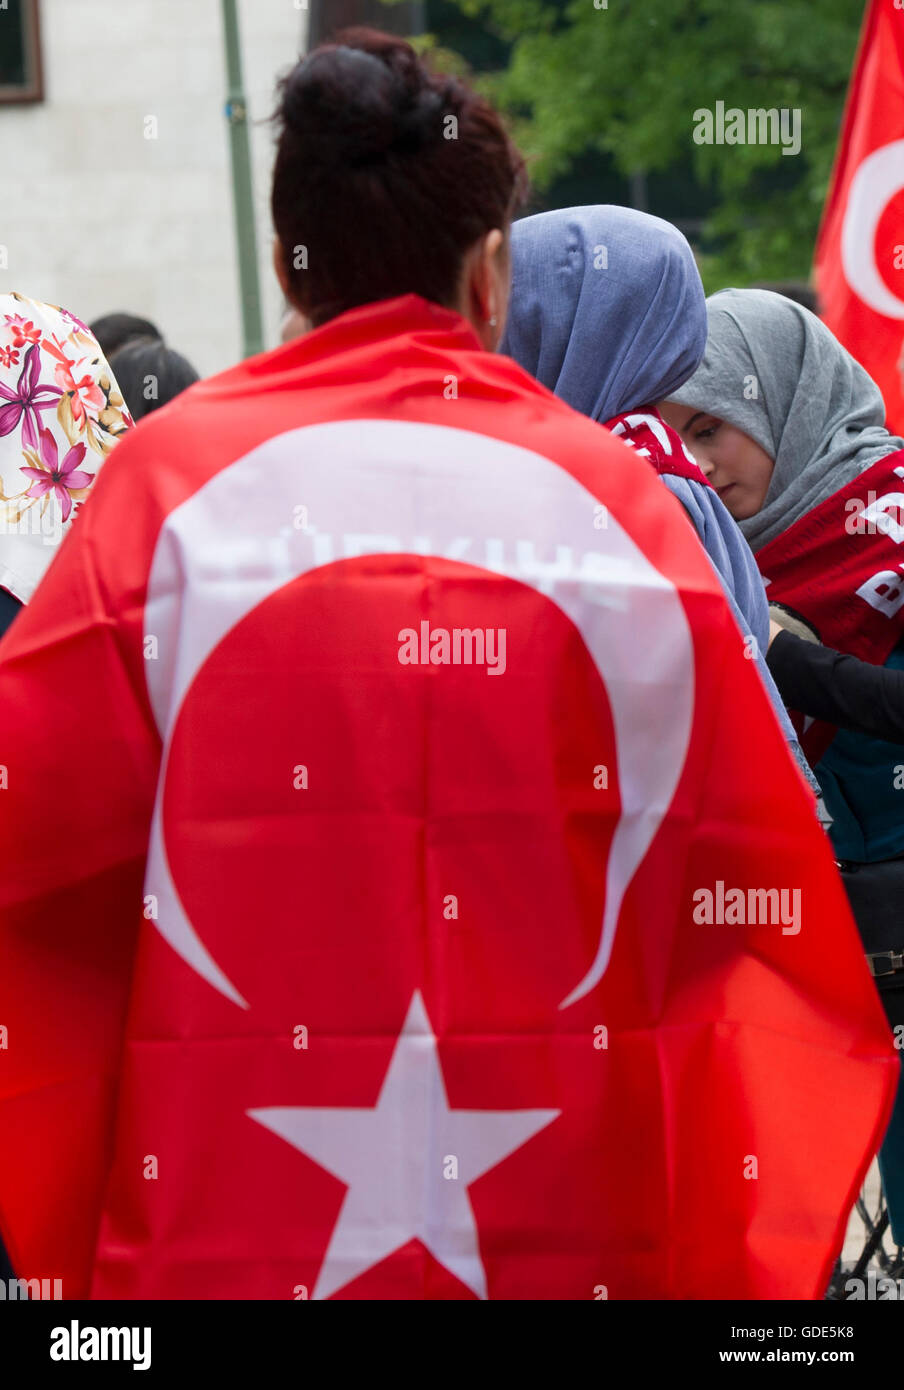 Berlino, Germania. 16 Luglio, 2016. Una donna con una bandiera turca in una dimostrazione al di fuori dell'Ambasciata turca a Berlino, Germania, 16 luglio 2016. Secondo la polizia, 500 persone hanno manifestato contro il colpo di stato militare in Turchia. Foto: PAOLO ZINKEN/DPA/Alamy Live News Foto Stock